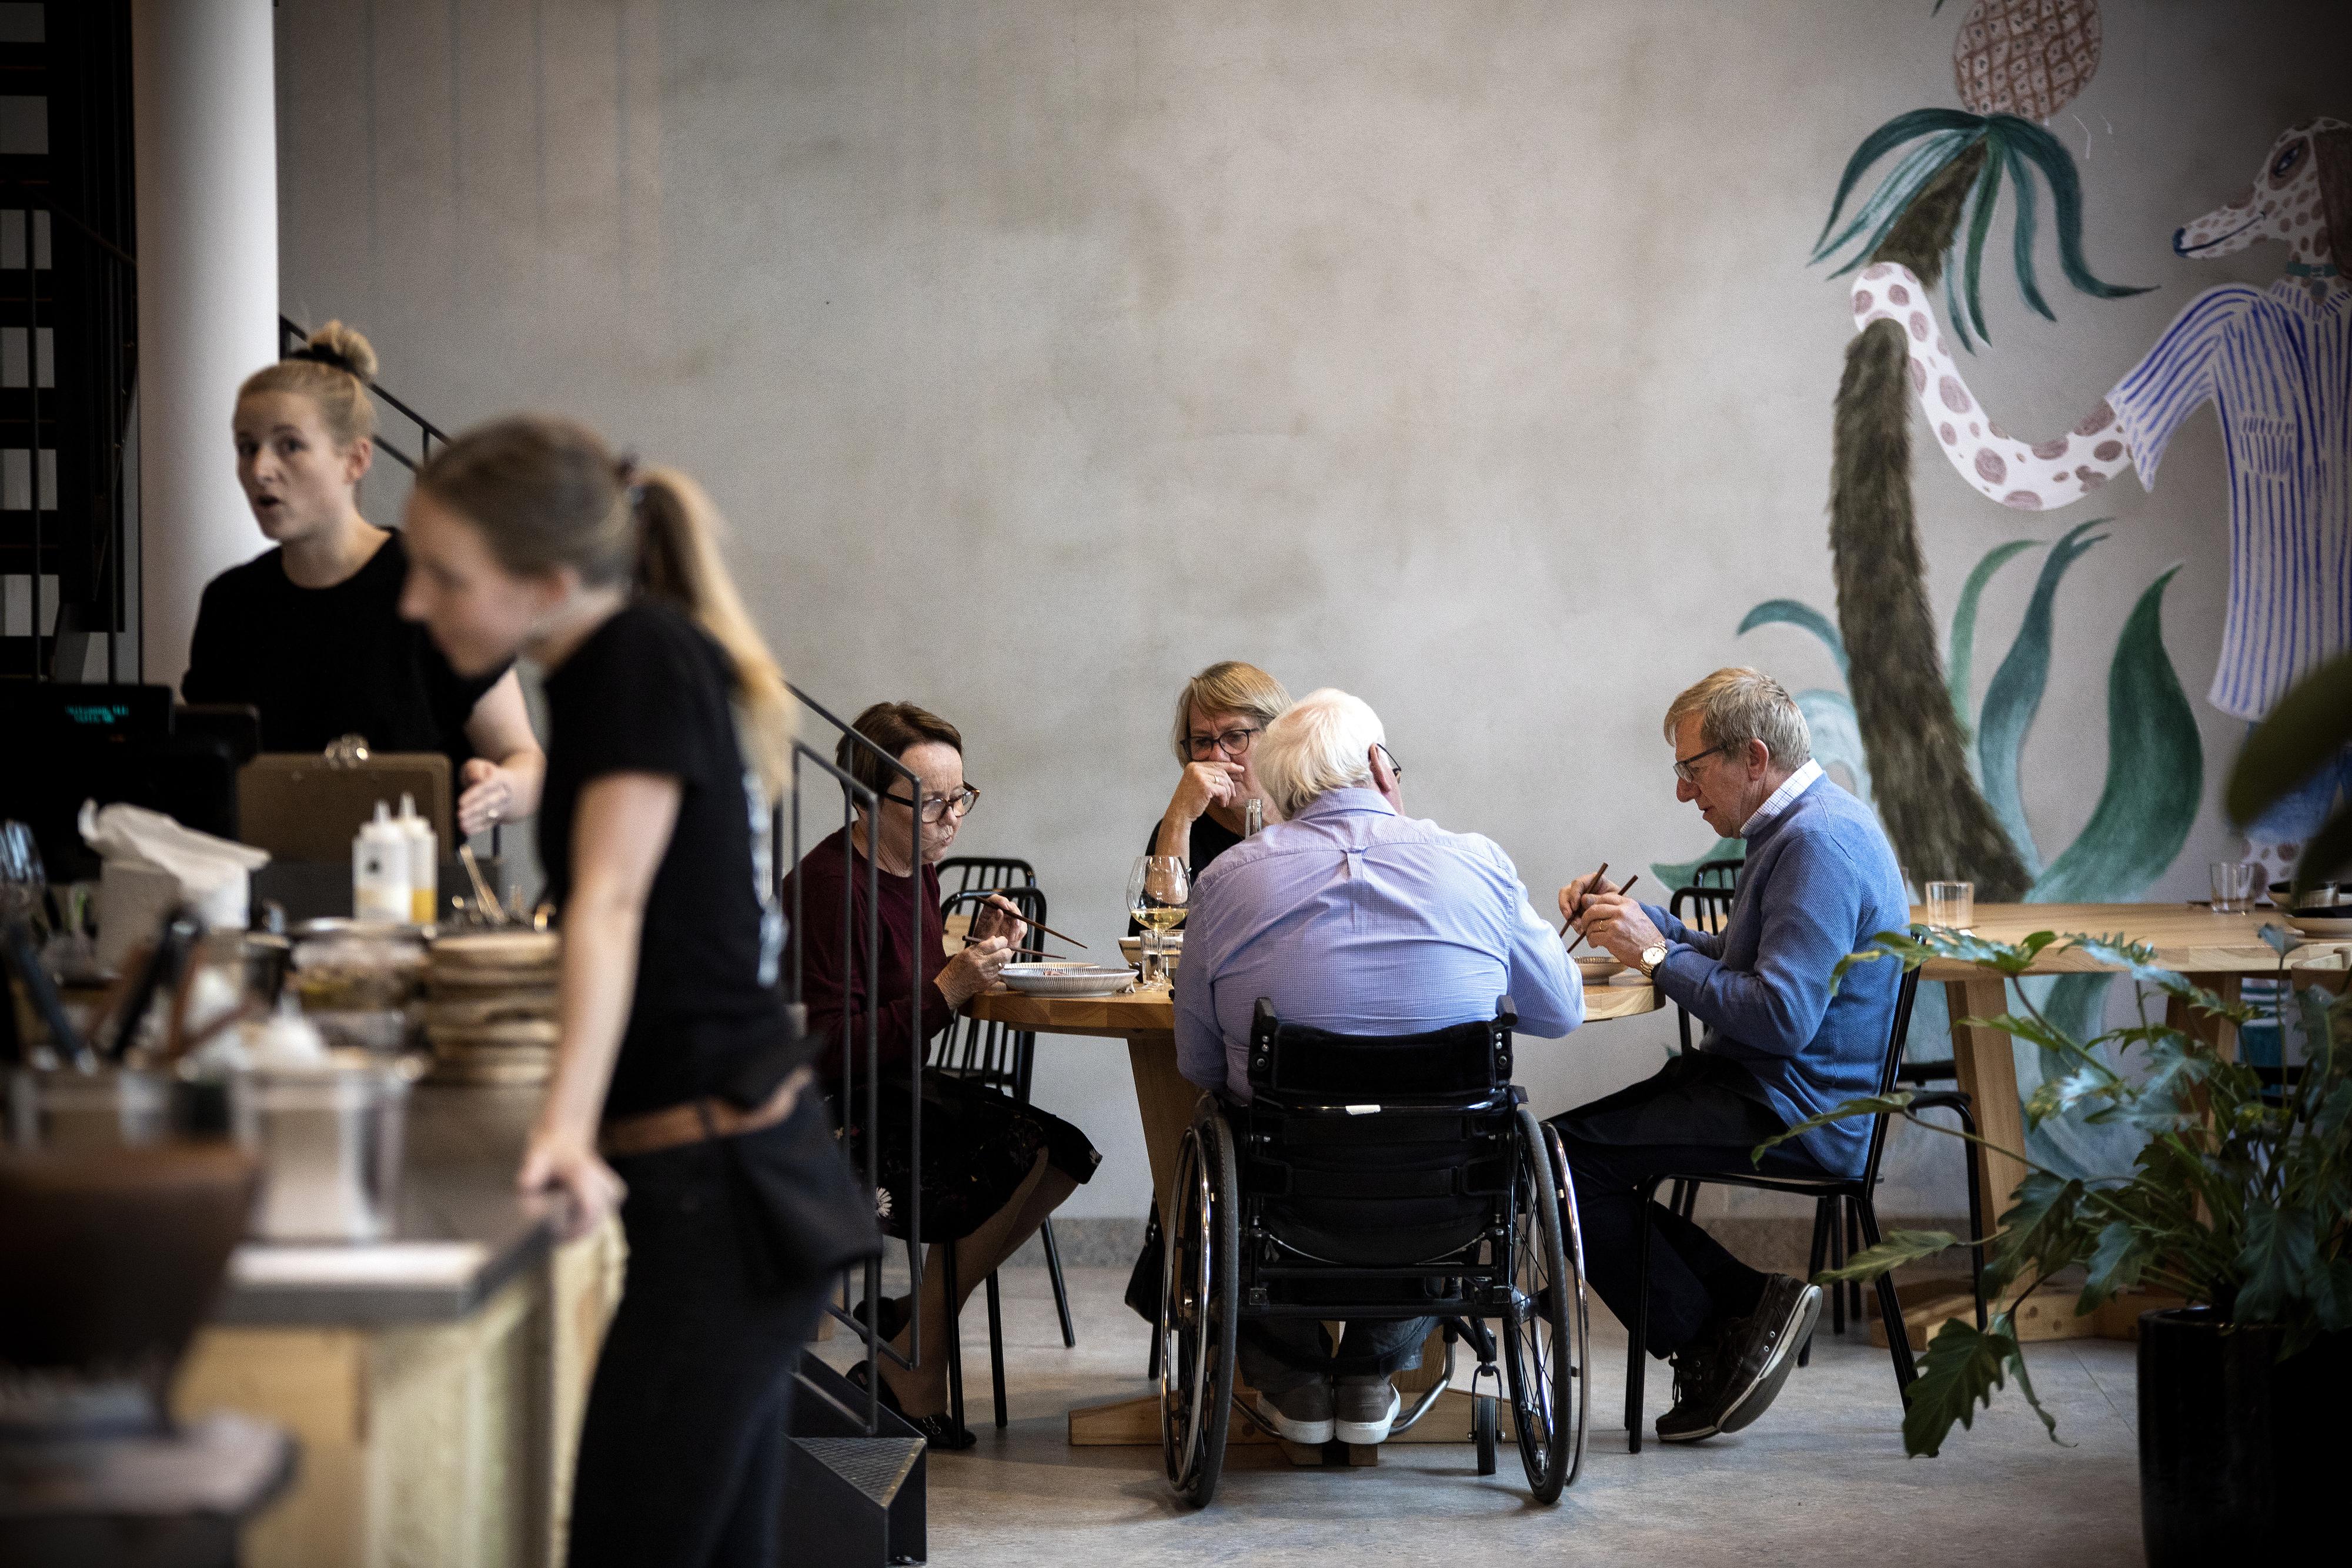 PÅ ØNSKELISTEN: Restaurant Katla står på ønskelisten til flere av de Godt har snakket med.